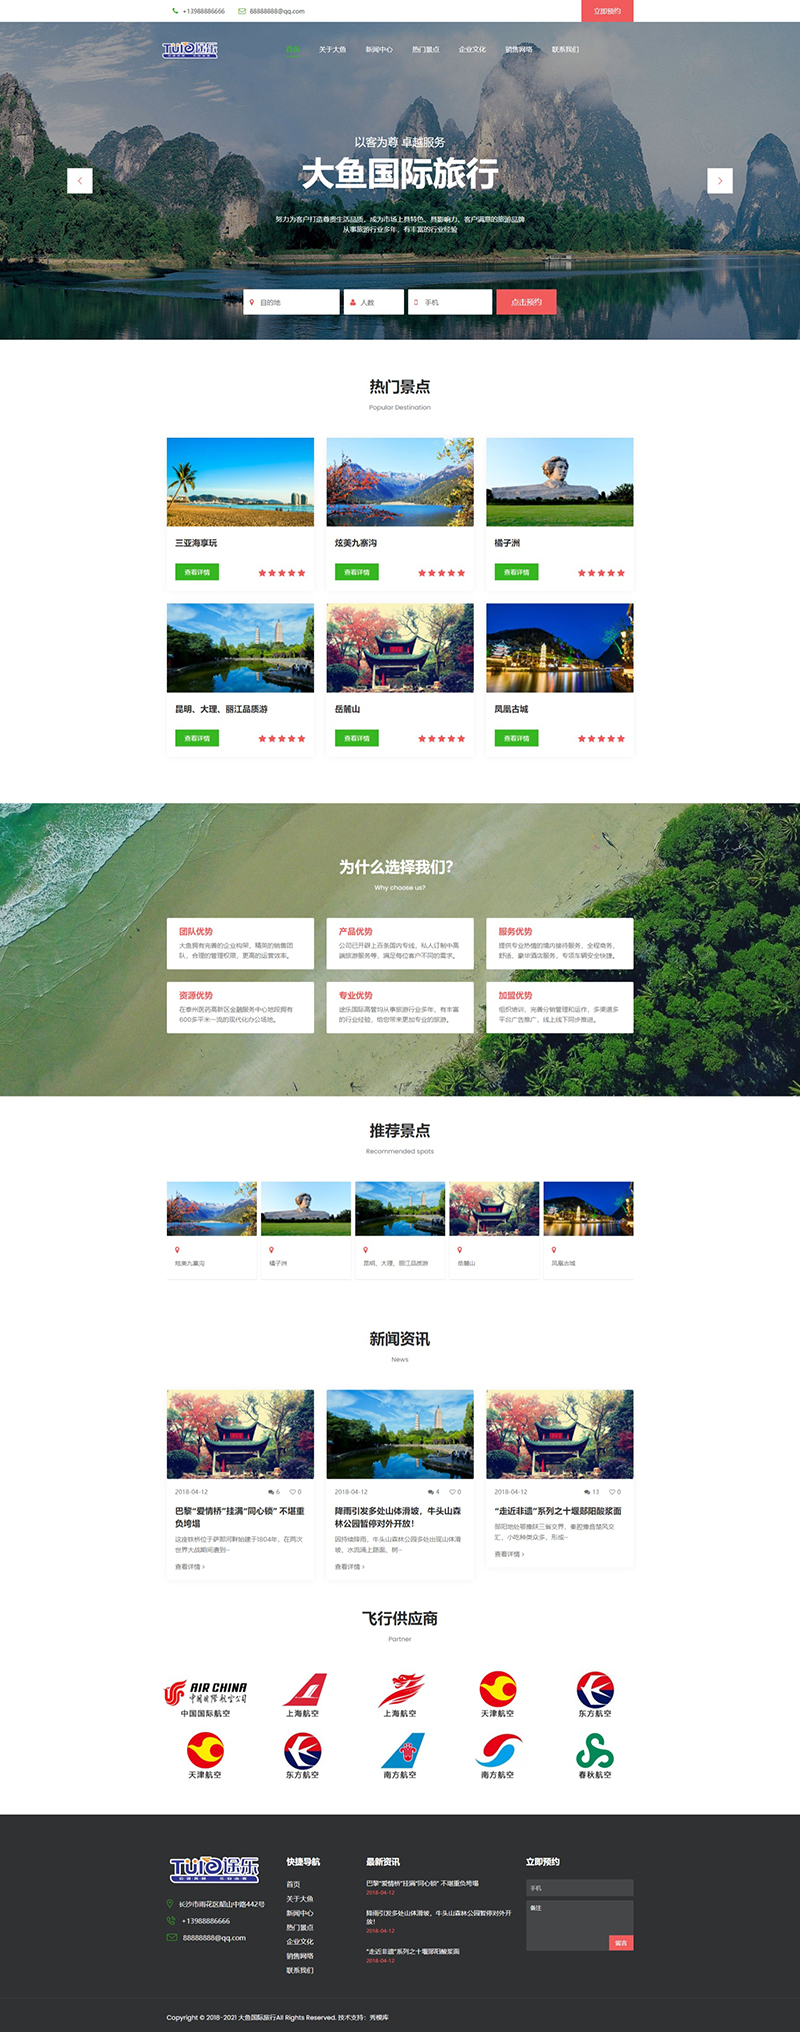 PV15 PBOOTCMS响应式旅行社旅游企业网站模板800.jpg